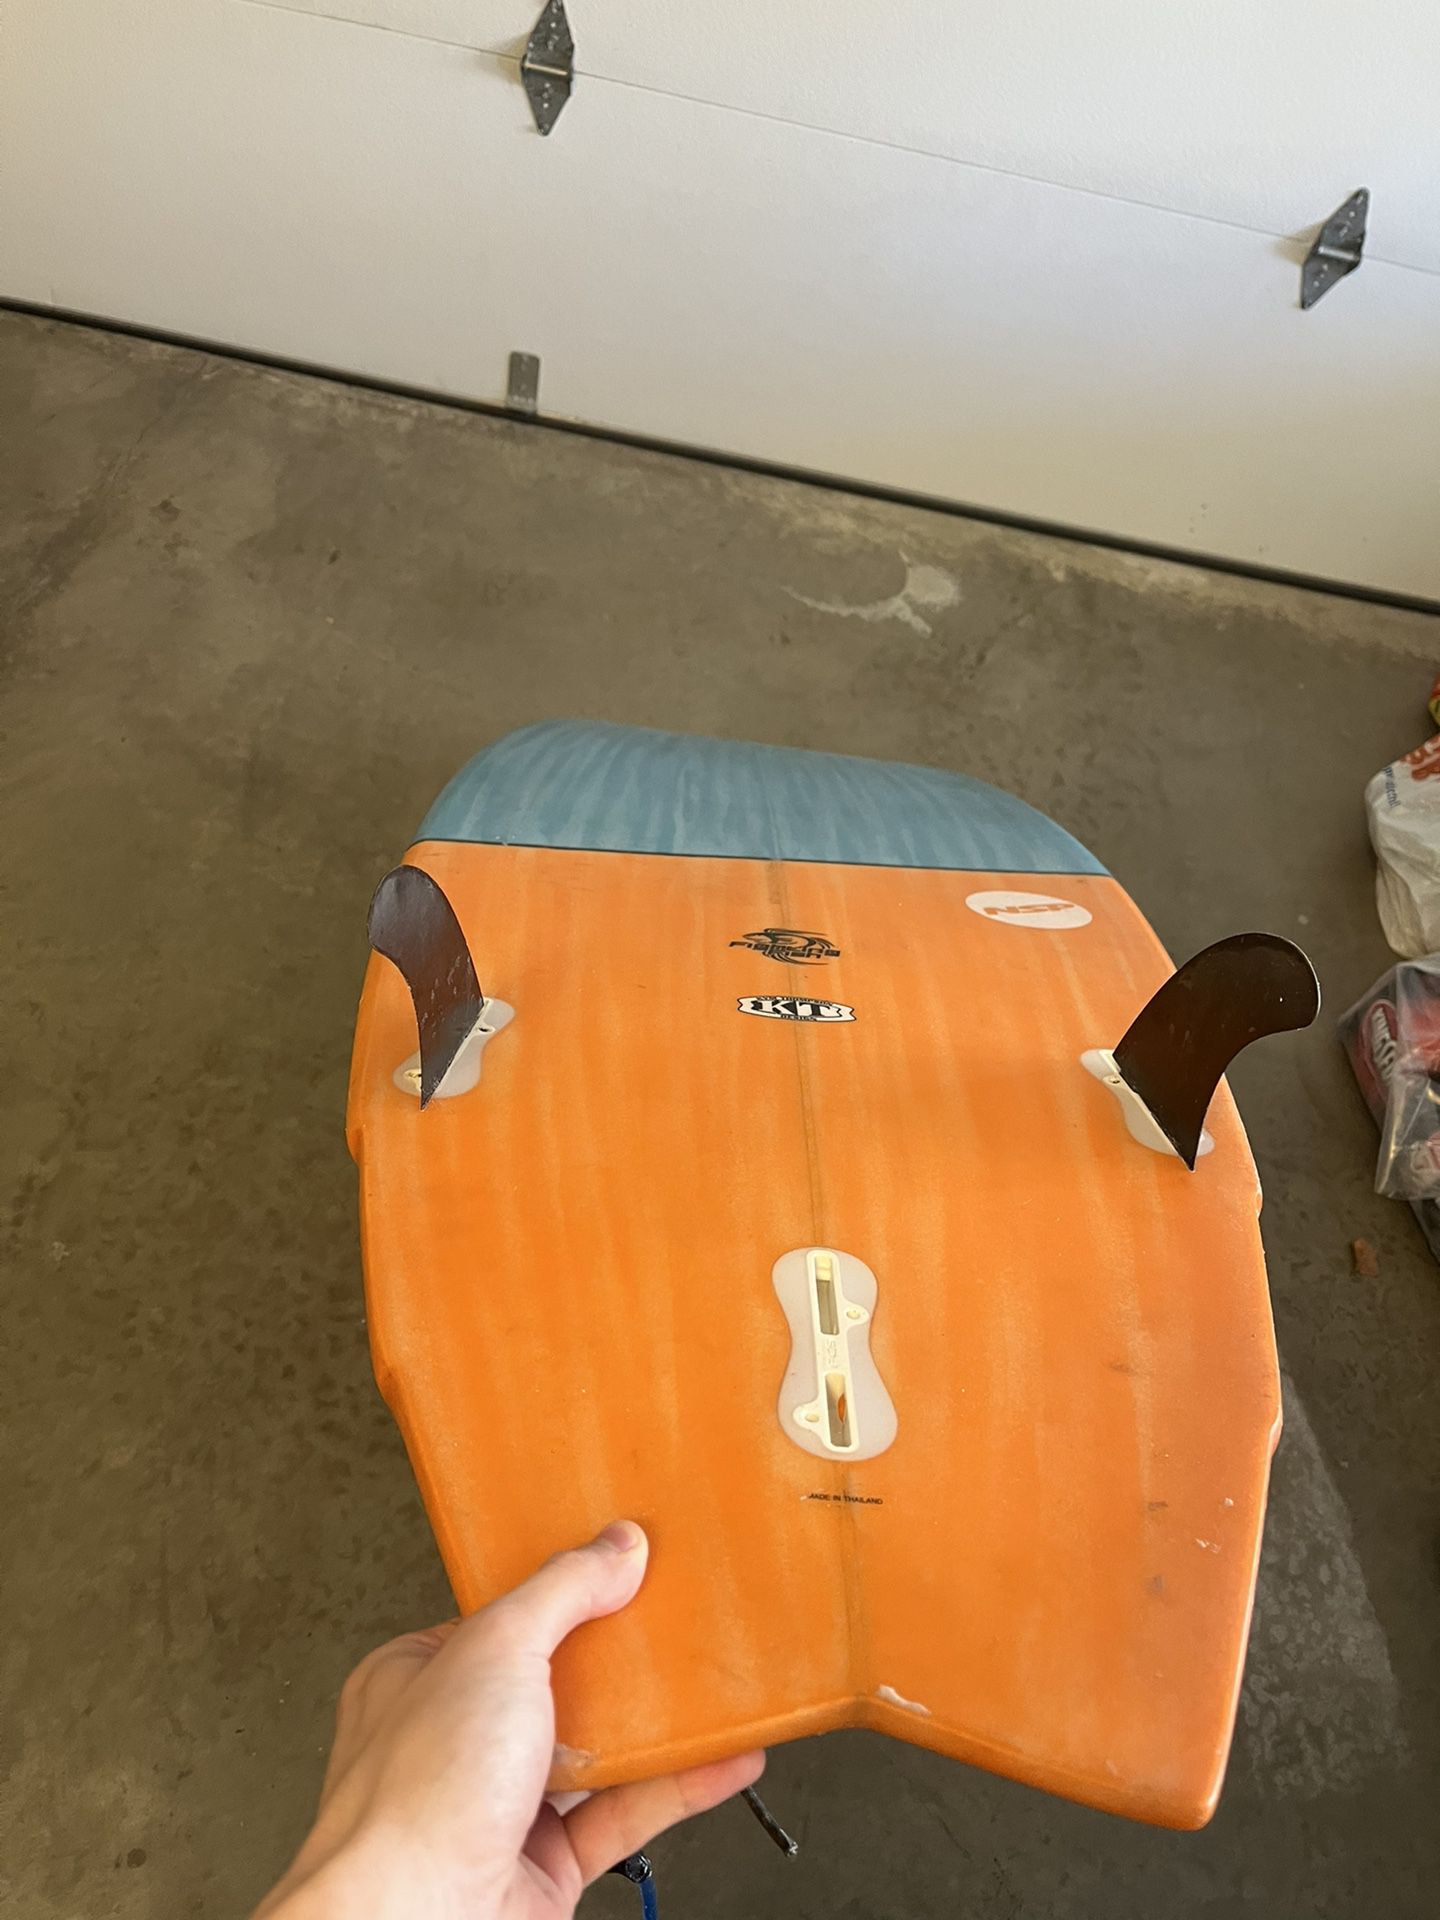 Fish Shortboard (surfboard)